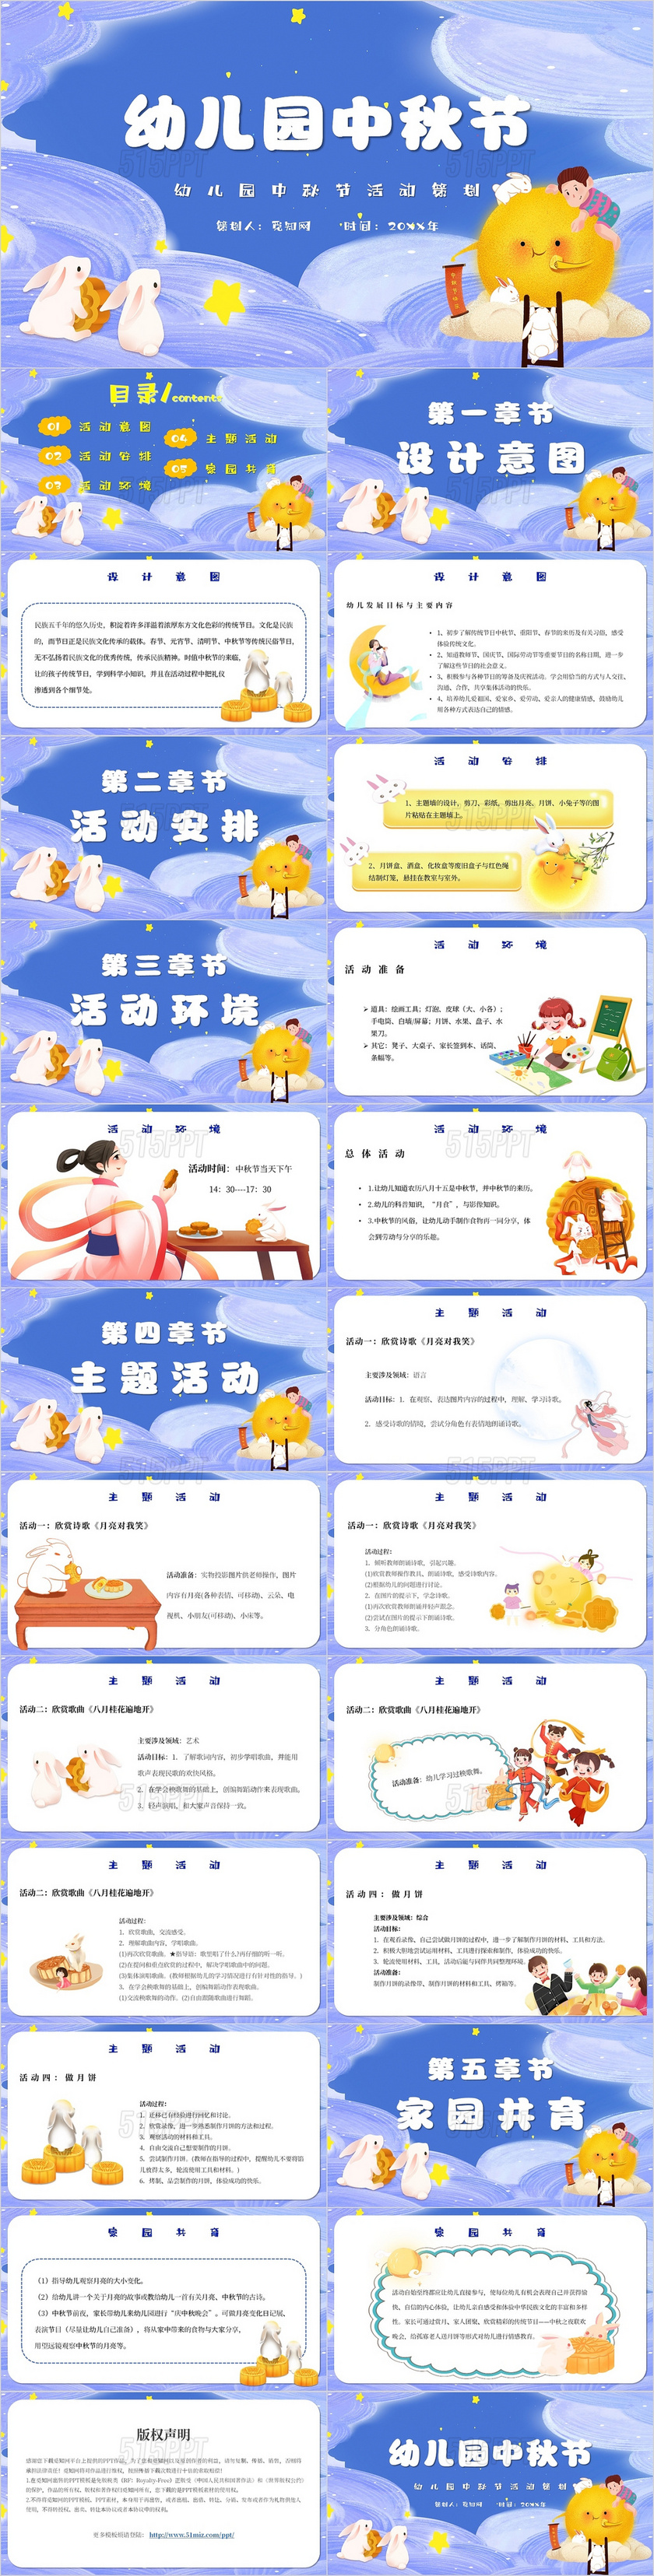 蓝色卡通幼儿园中秋节活动策划主题PPT模板